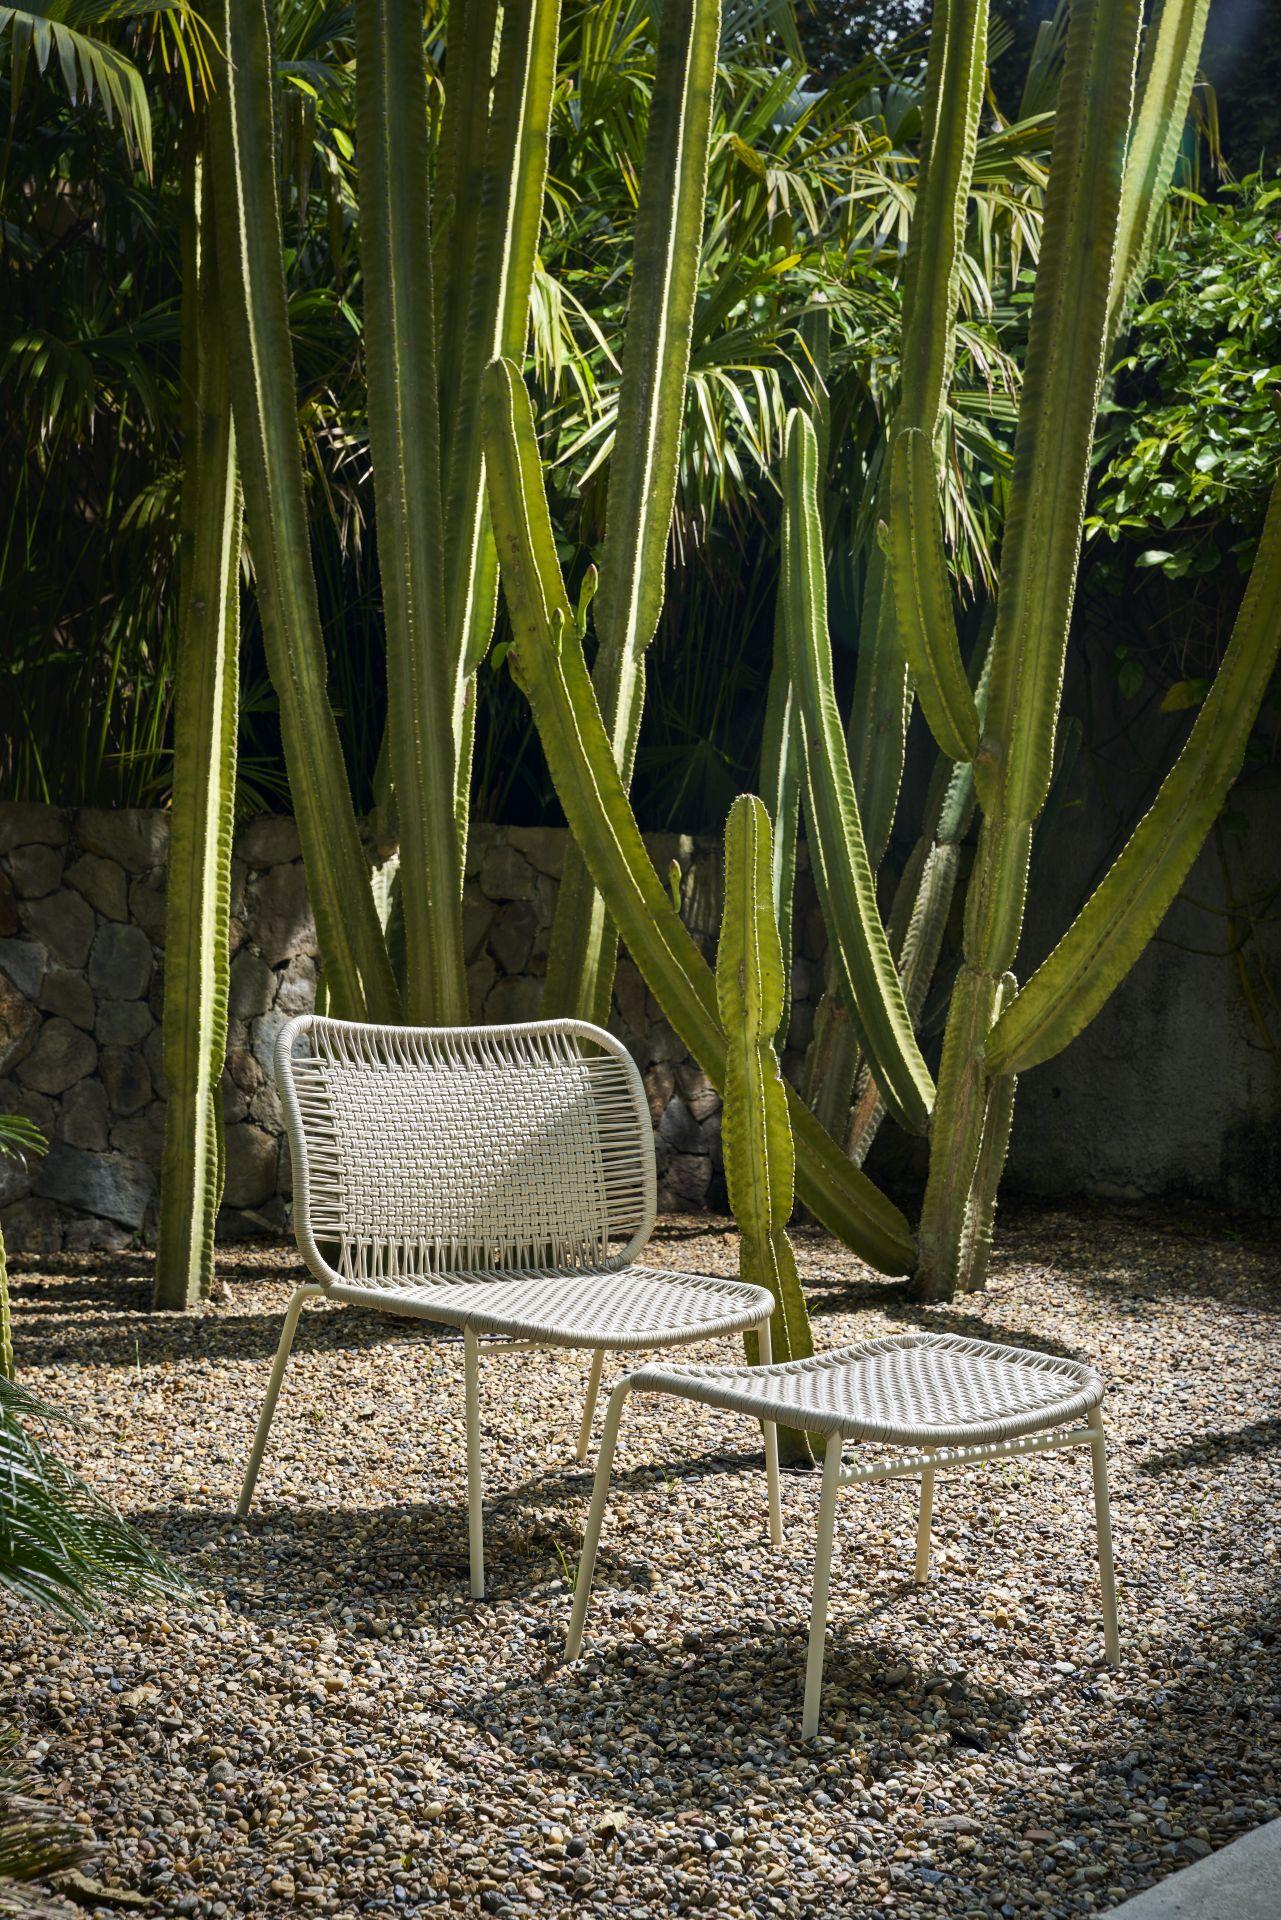 Der Cielo Lounge Chair Low ist ein leichter, vielseitiger und bequemer Entwurf von Sebastian Herkner. Er ist sowohl für den Innen- als auch für den Außenbereich geeignet und eignet sich hervorragend, um inspirierende Sitzbereiche auf einer Terrasse